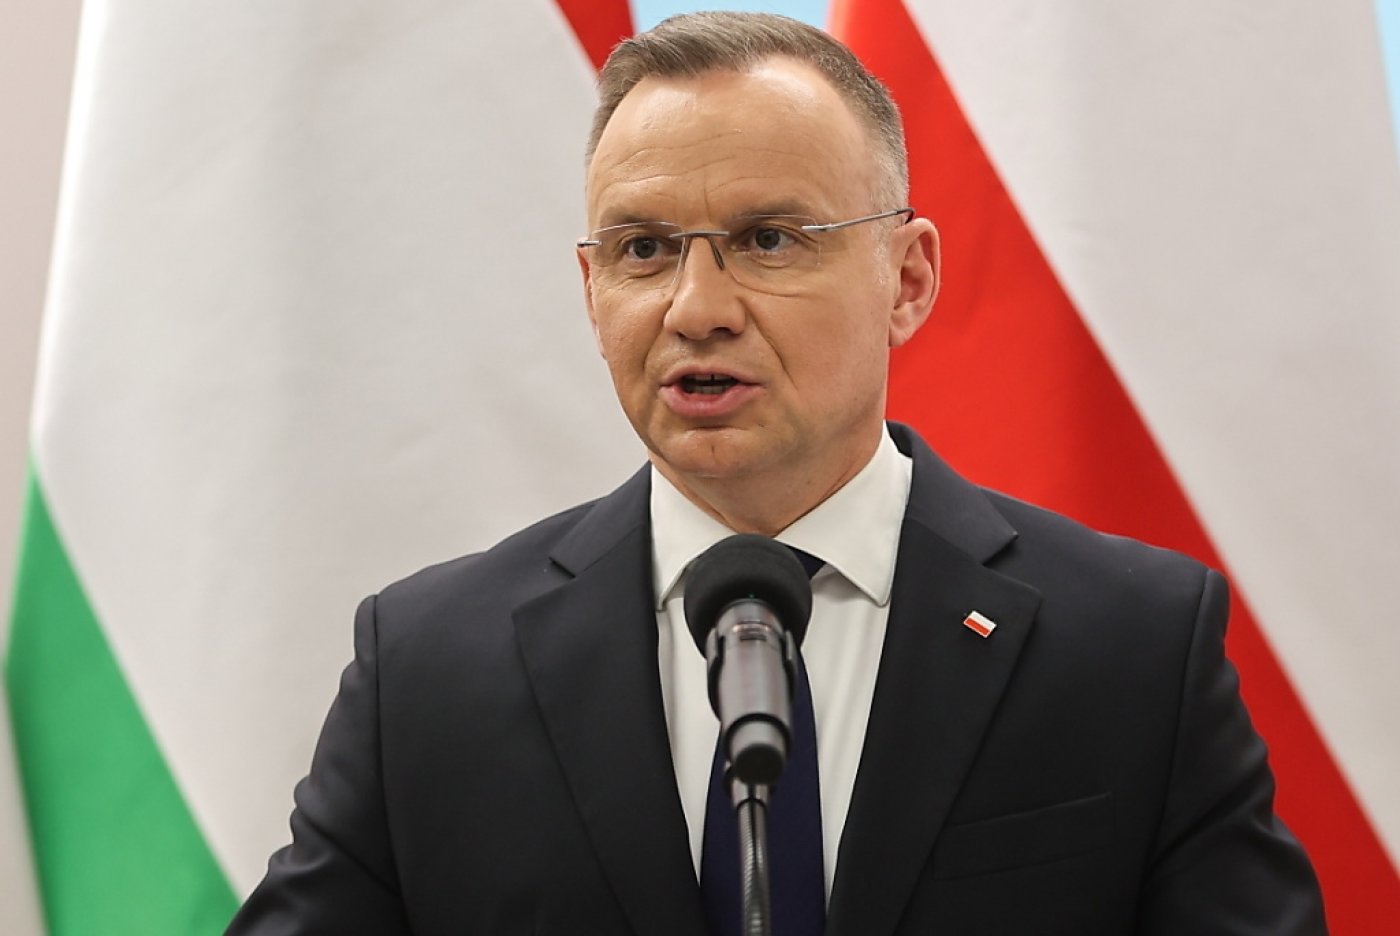 Le président polonais conservateur Andrzej Duda s'oppose à la loi visant à libéraliser l'accès à la pilule du lendemain (archives). KEYSTONE